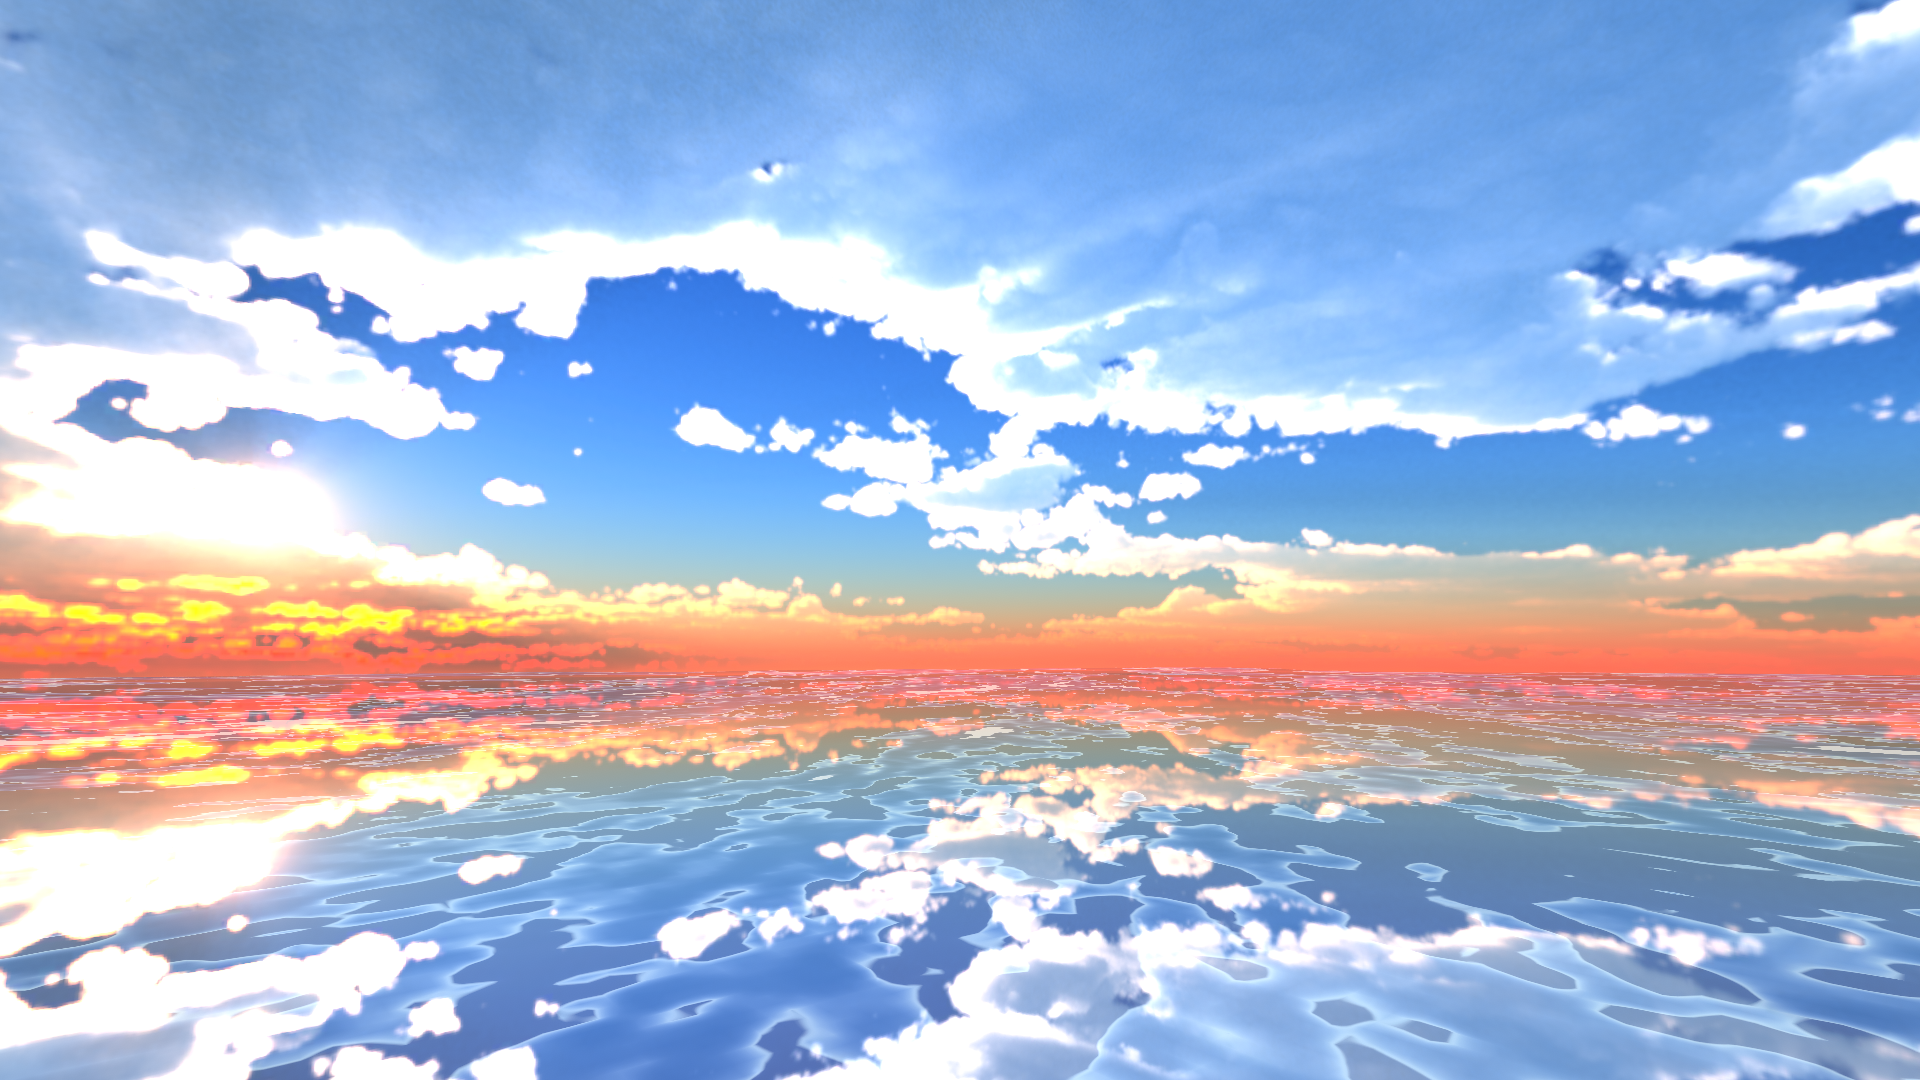 なめりん On Twitter 天空の鏡 ウユニ塩湖をイメージした綺麗なワールド作ってみました よかったら遊びに来てください Vrchat Vrchat World紹介